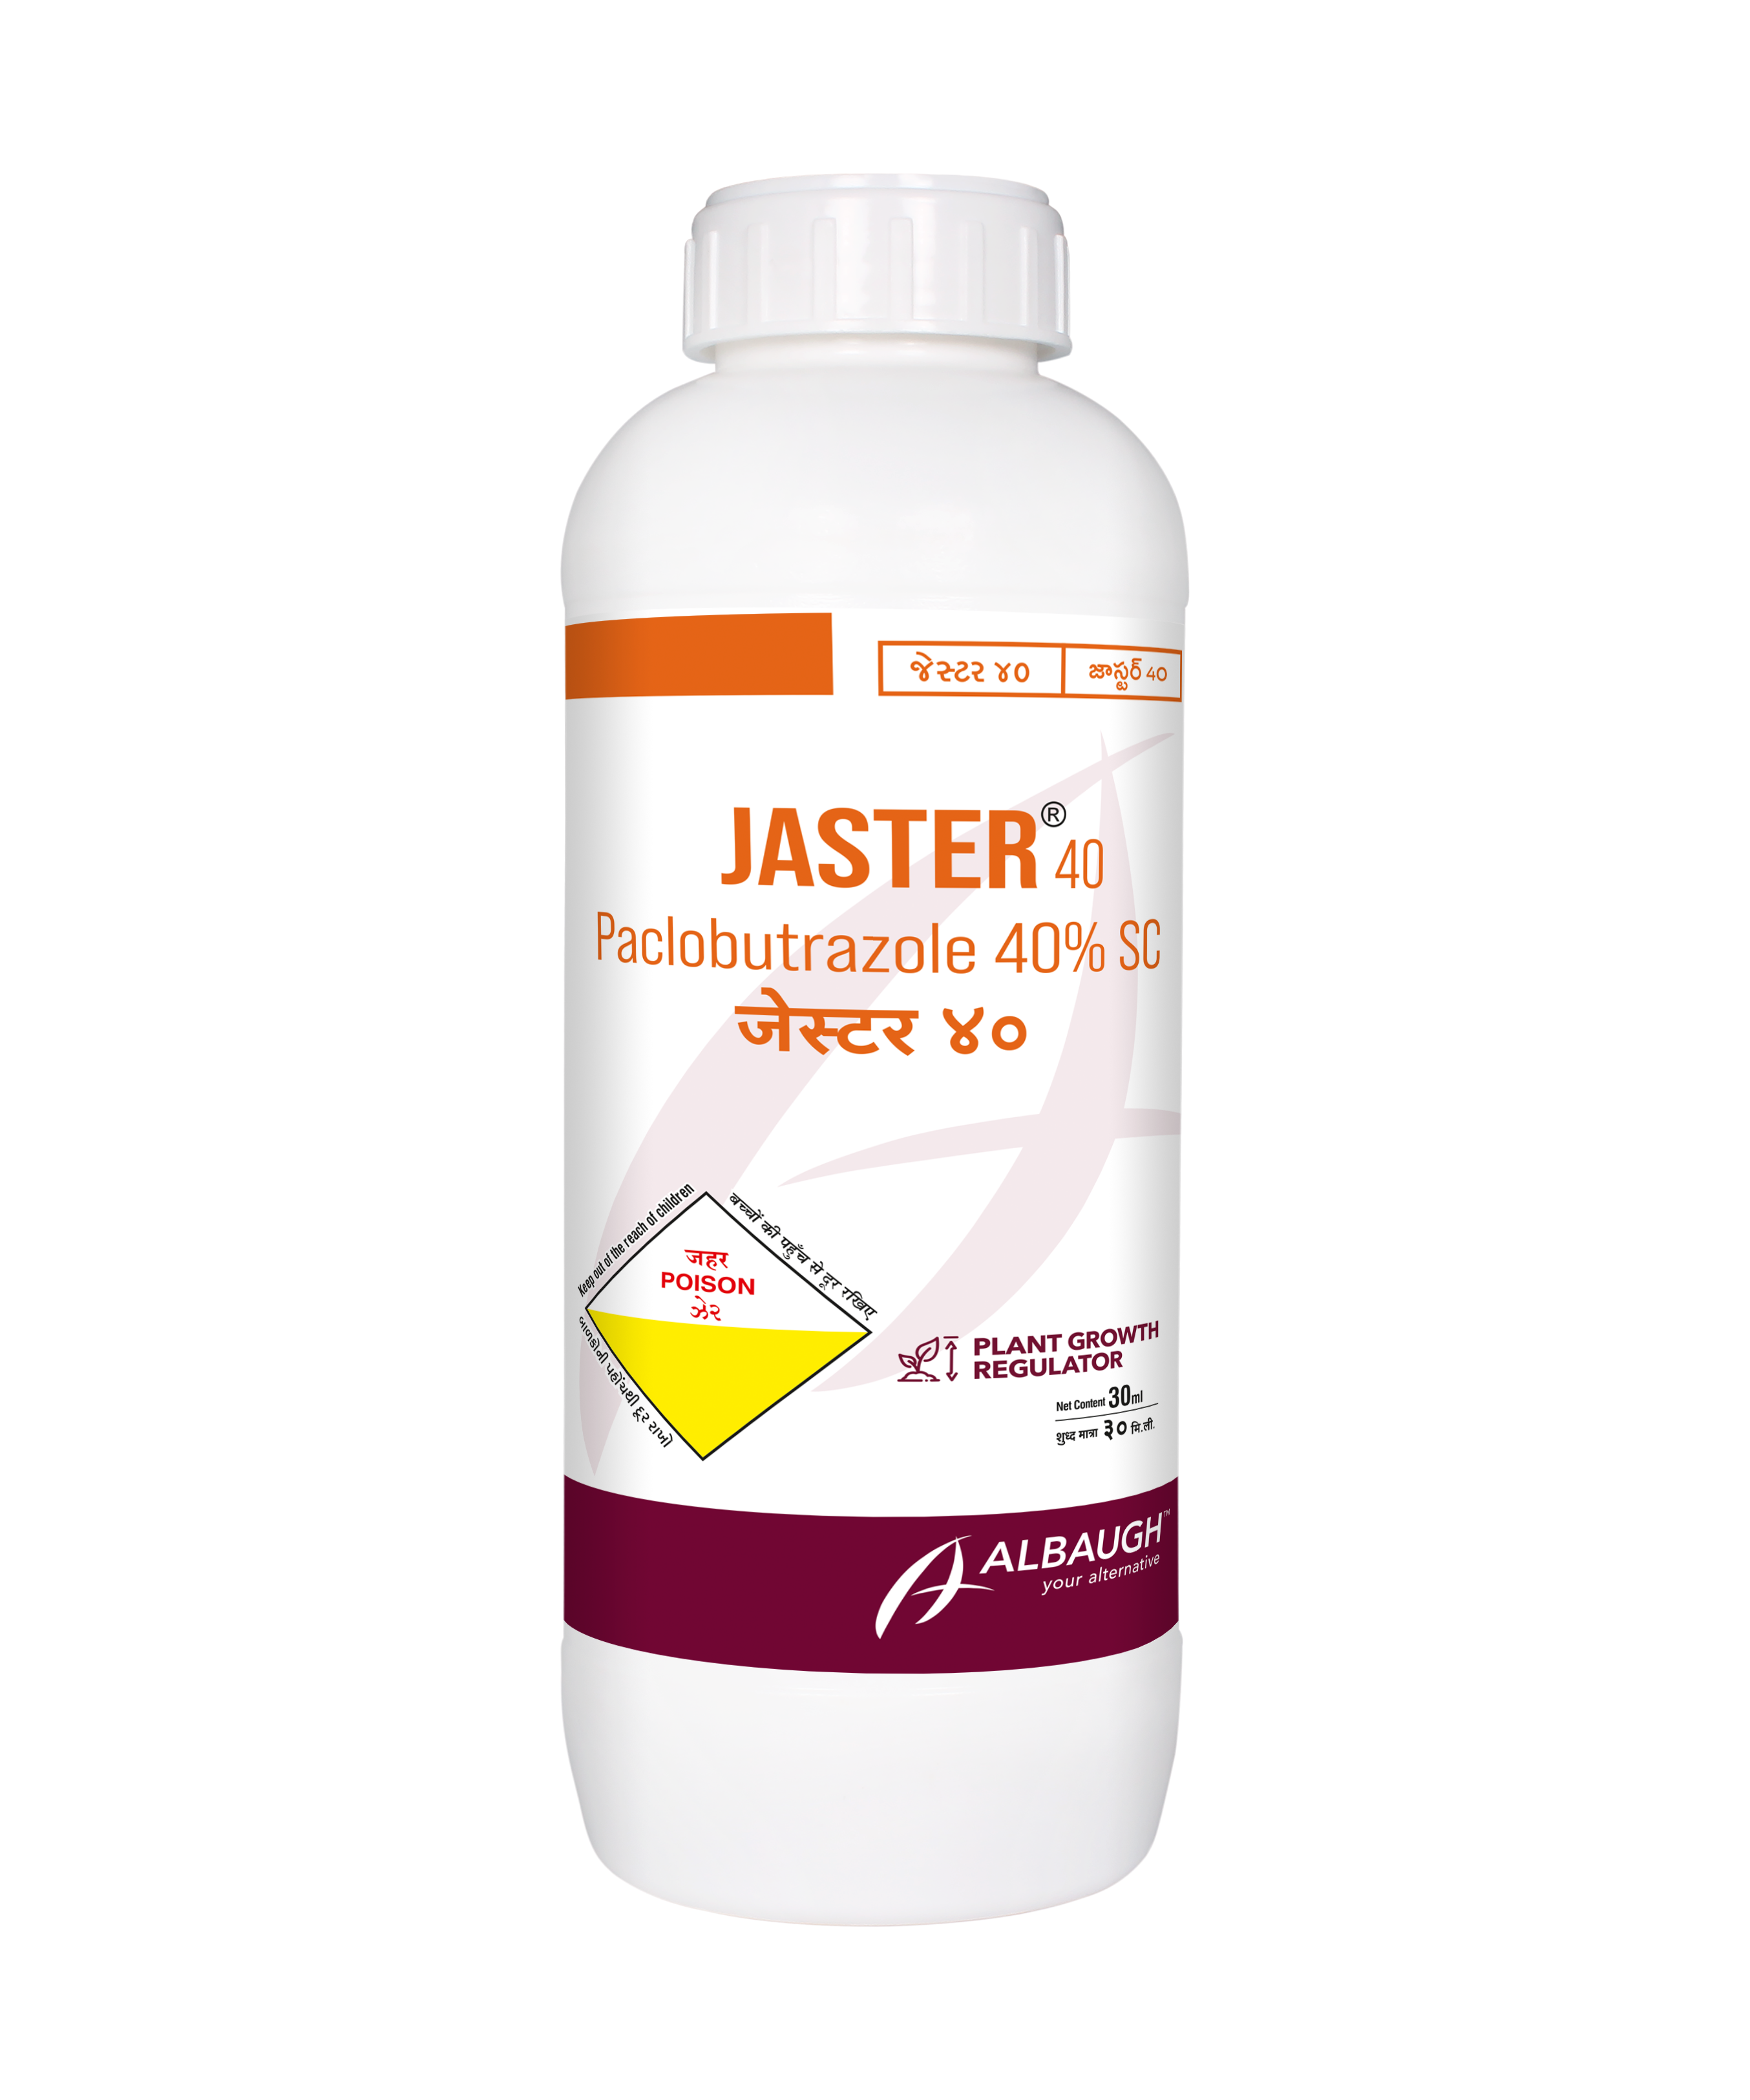 Jaster 40: Paclobutrazole 40% SC